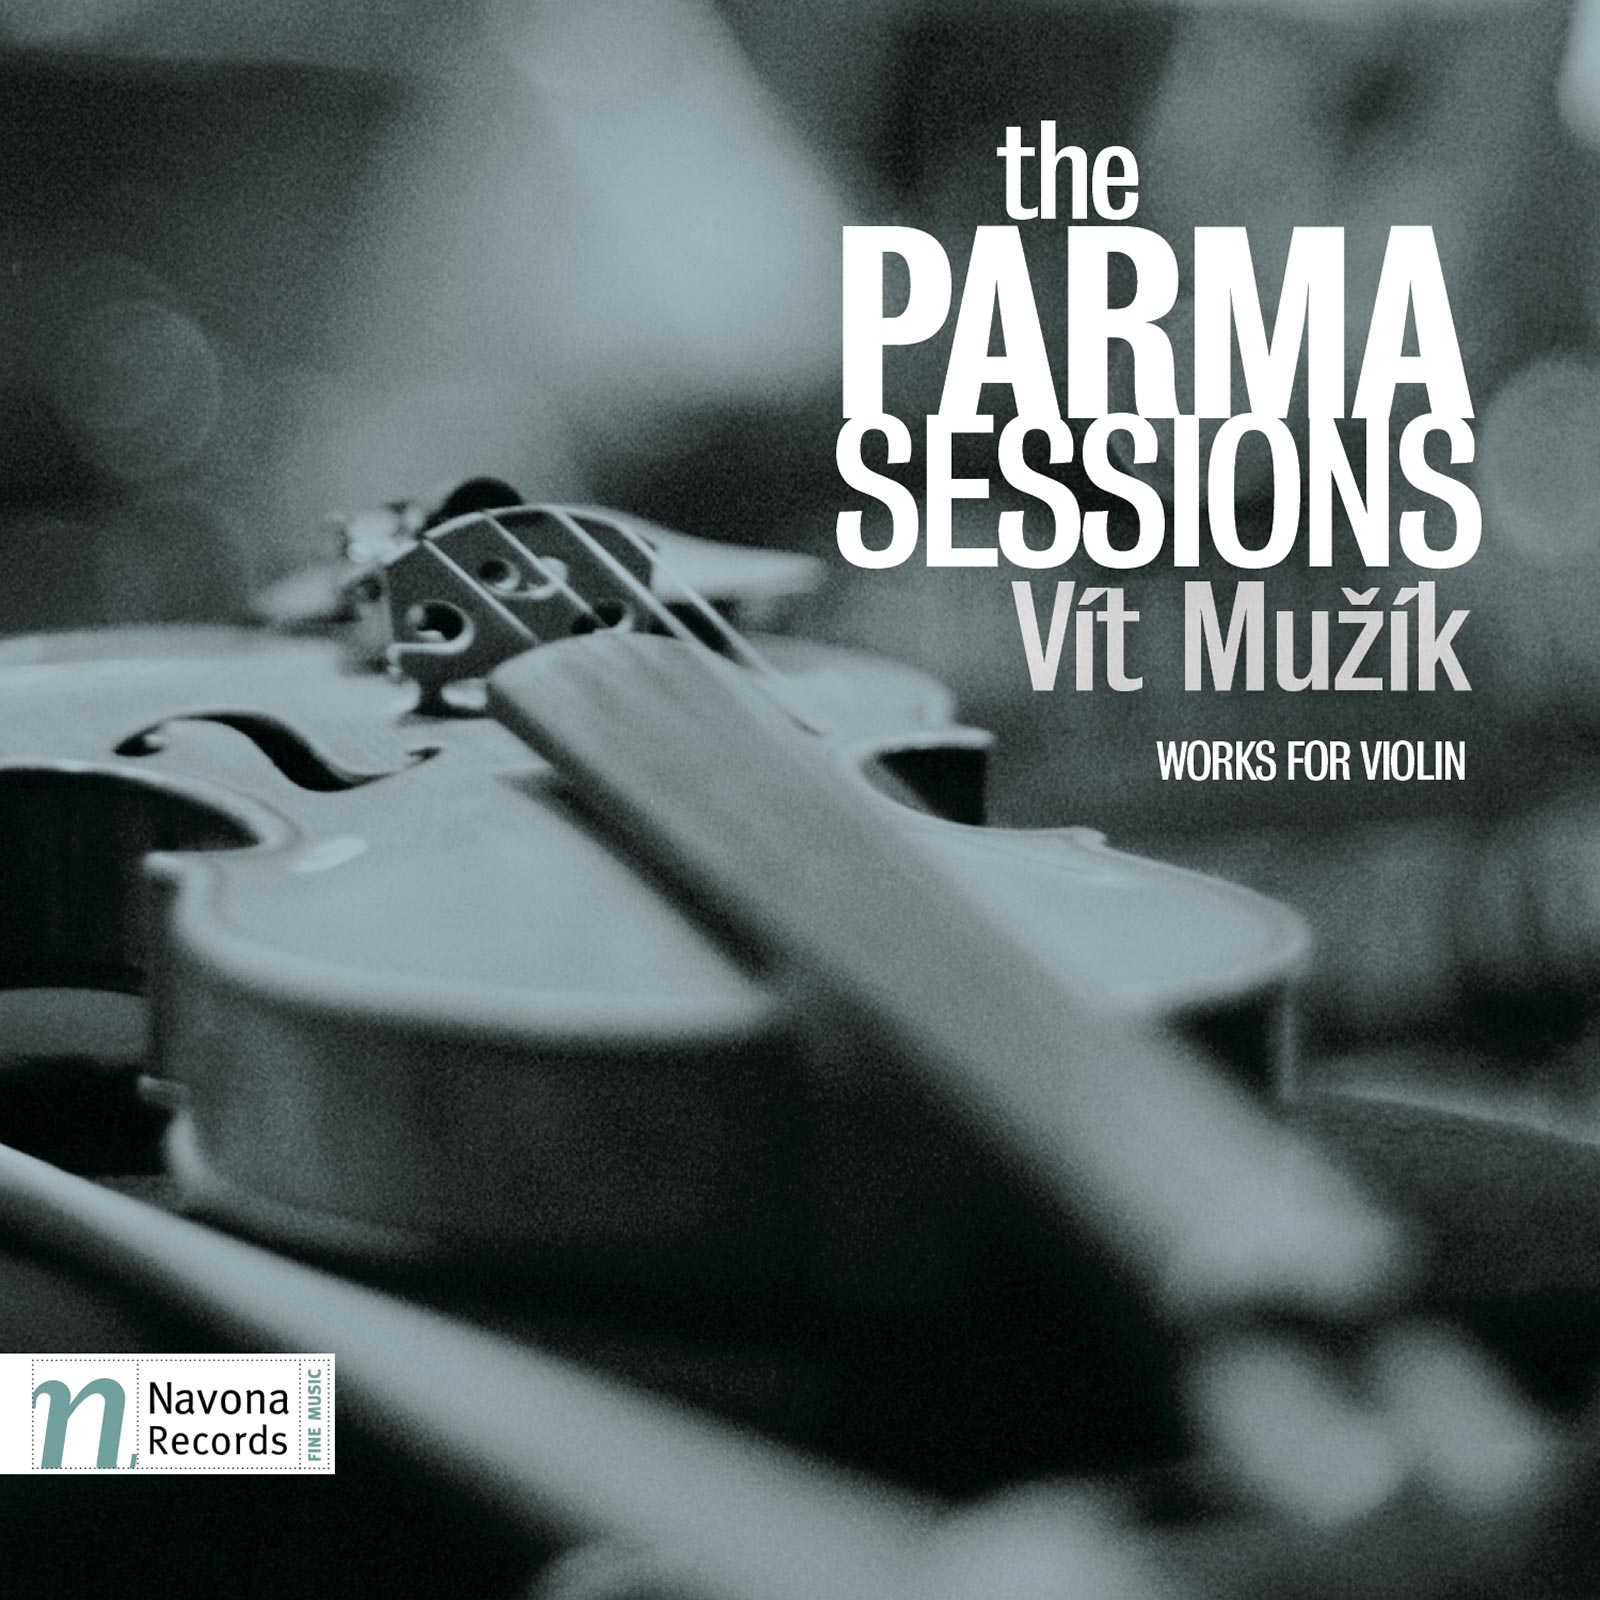 The PARMA Sessions: Vít Mužík